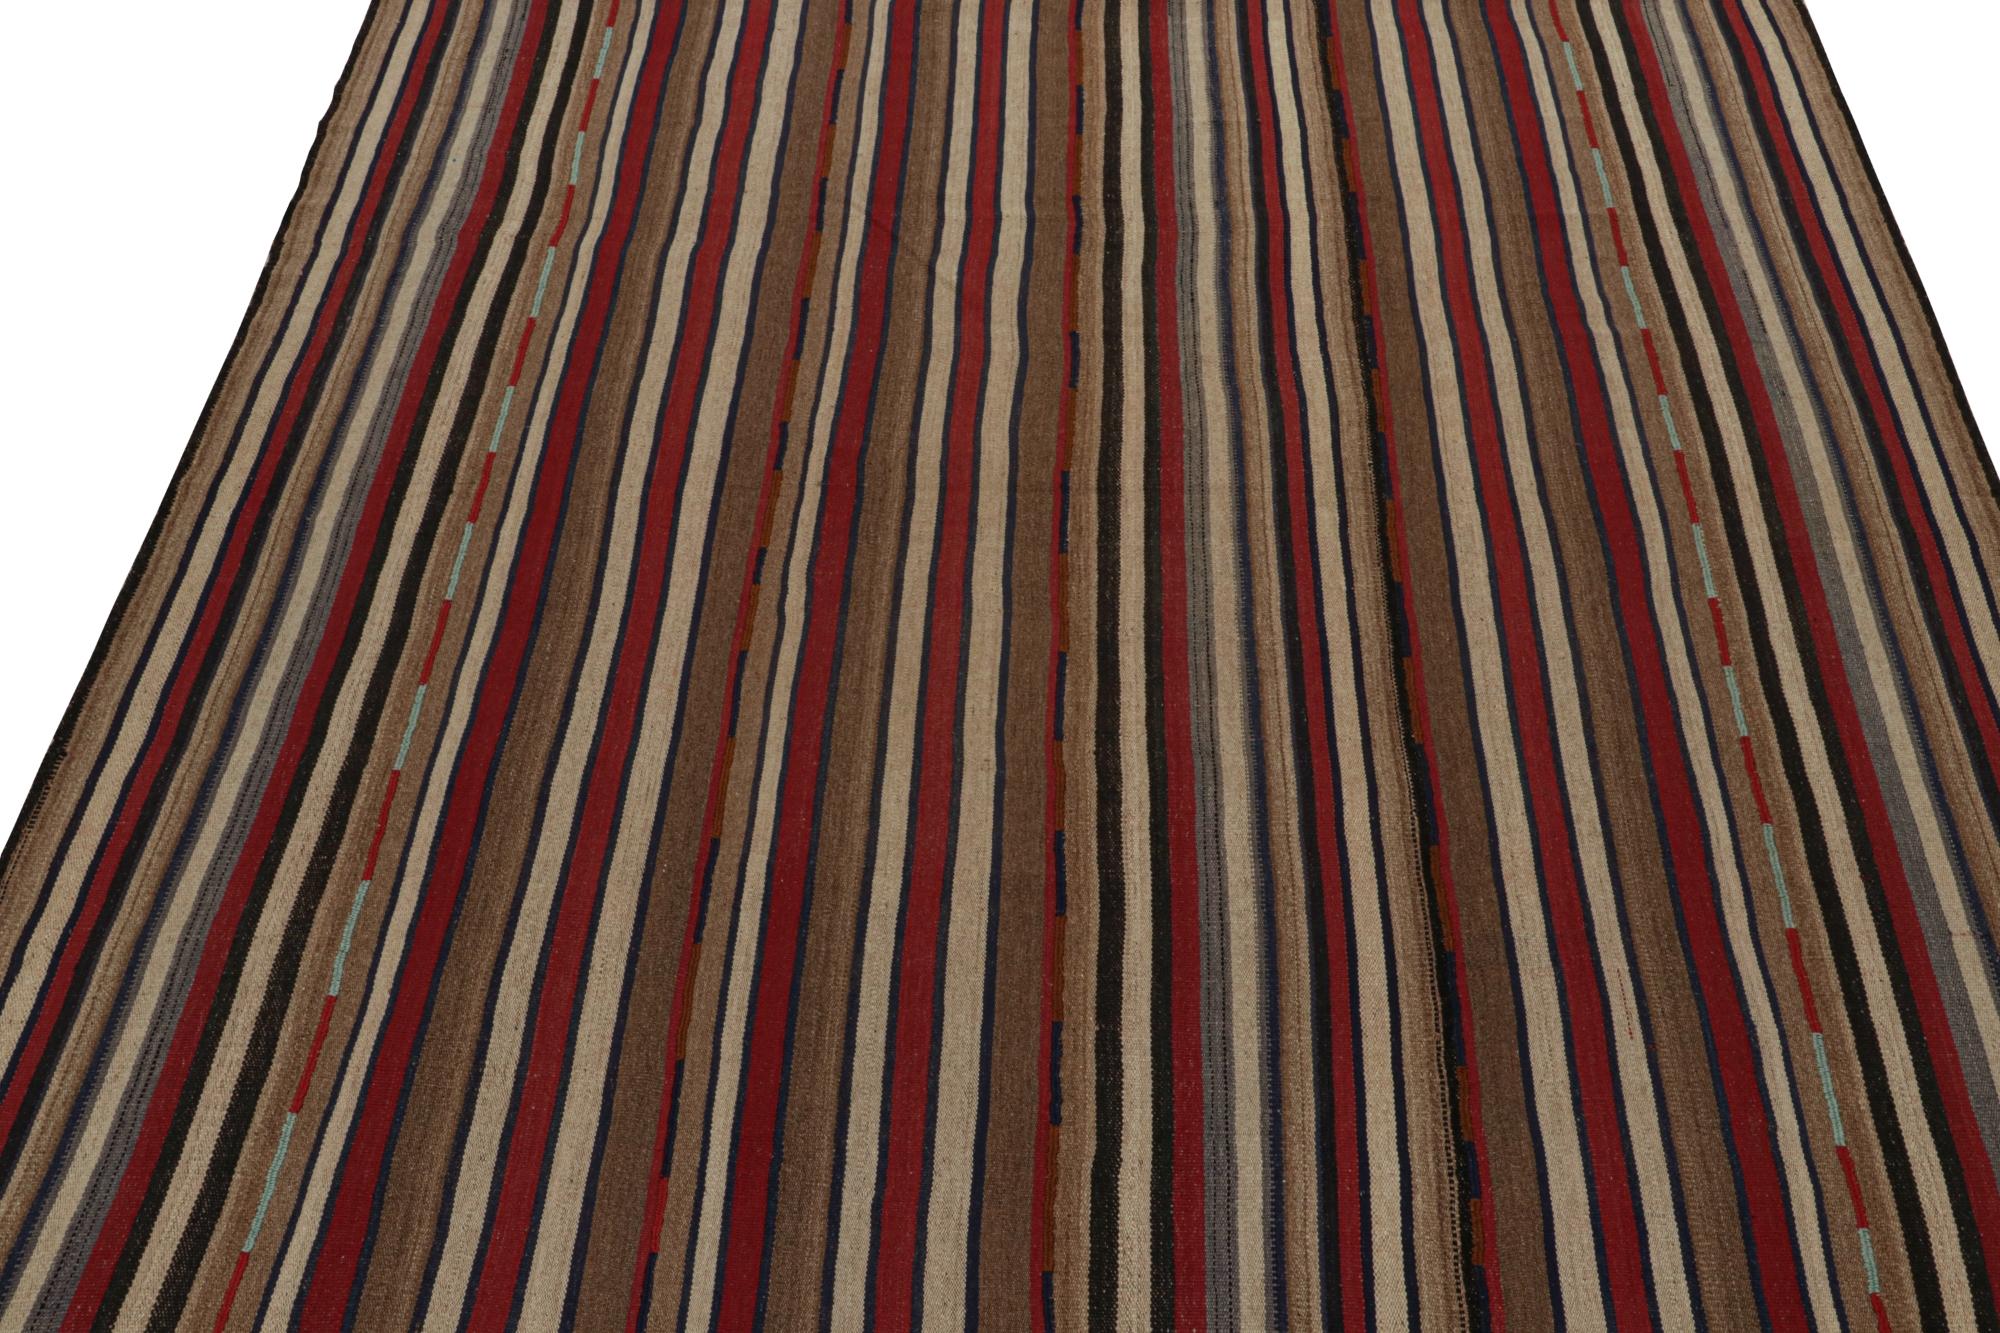 Ce kilim persan vintage de 8x9 est tissé à la main en laine et date des années 1950-1960.

Sur le Design : 

Le Flatweave présente un motif all-over avec des rayures dans des tons riches de rouge, beige-brun et bleu.
Il s'agit d'un choix confortable